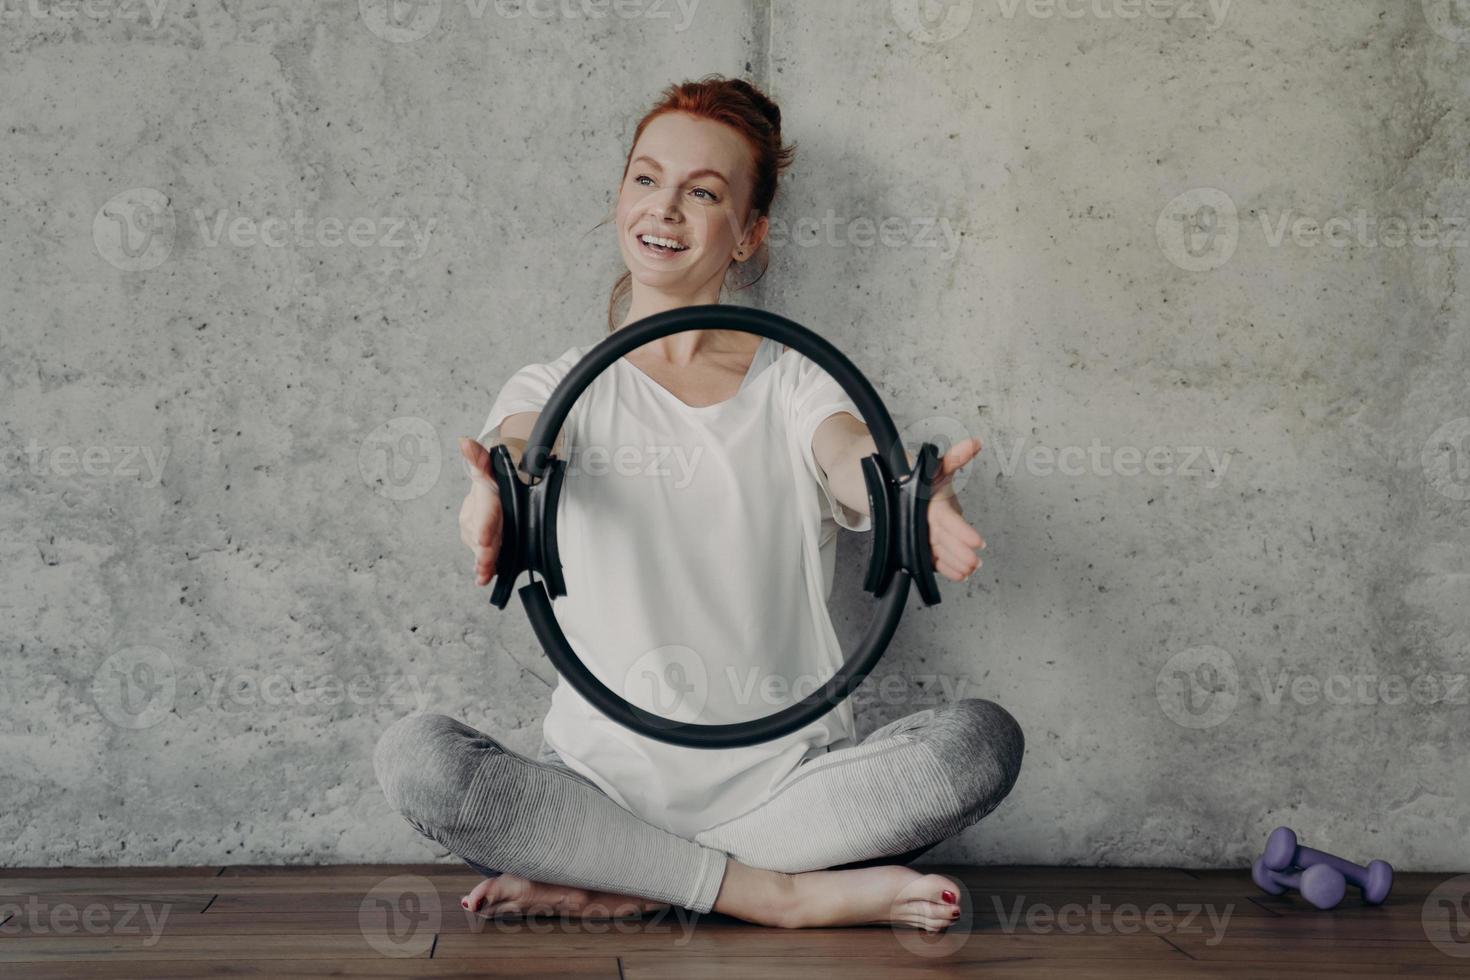 feliz mujer pelirroja sonriente sentada en posición de loto con anillo de pilates durante el entrenamiento foto